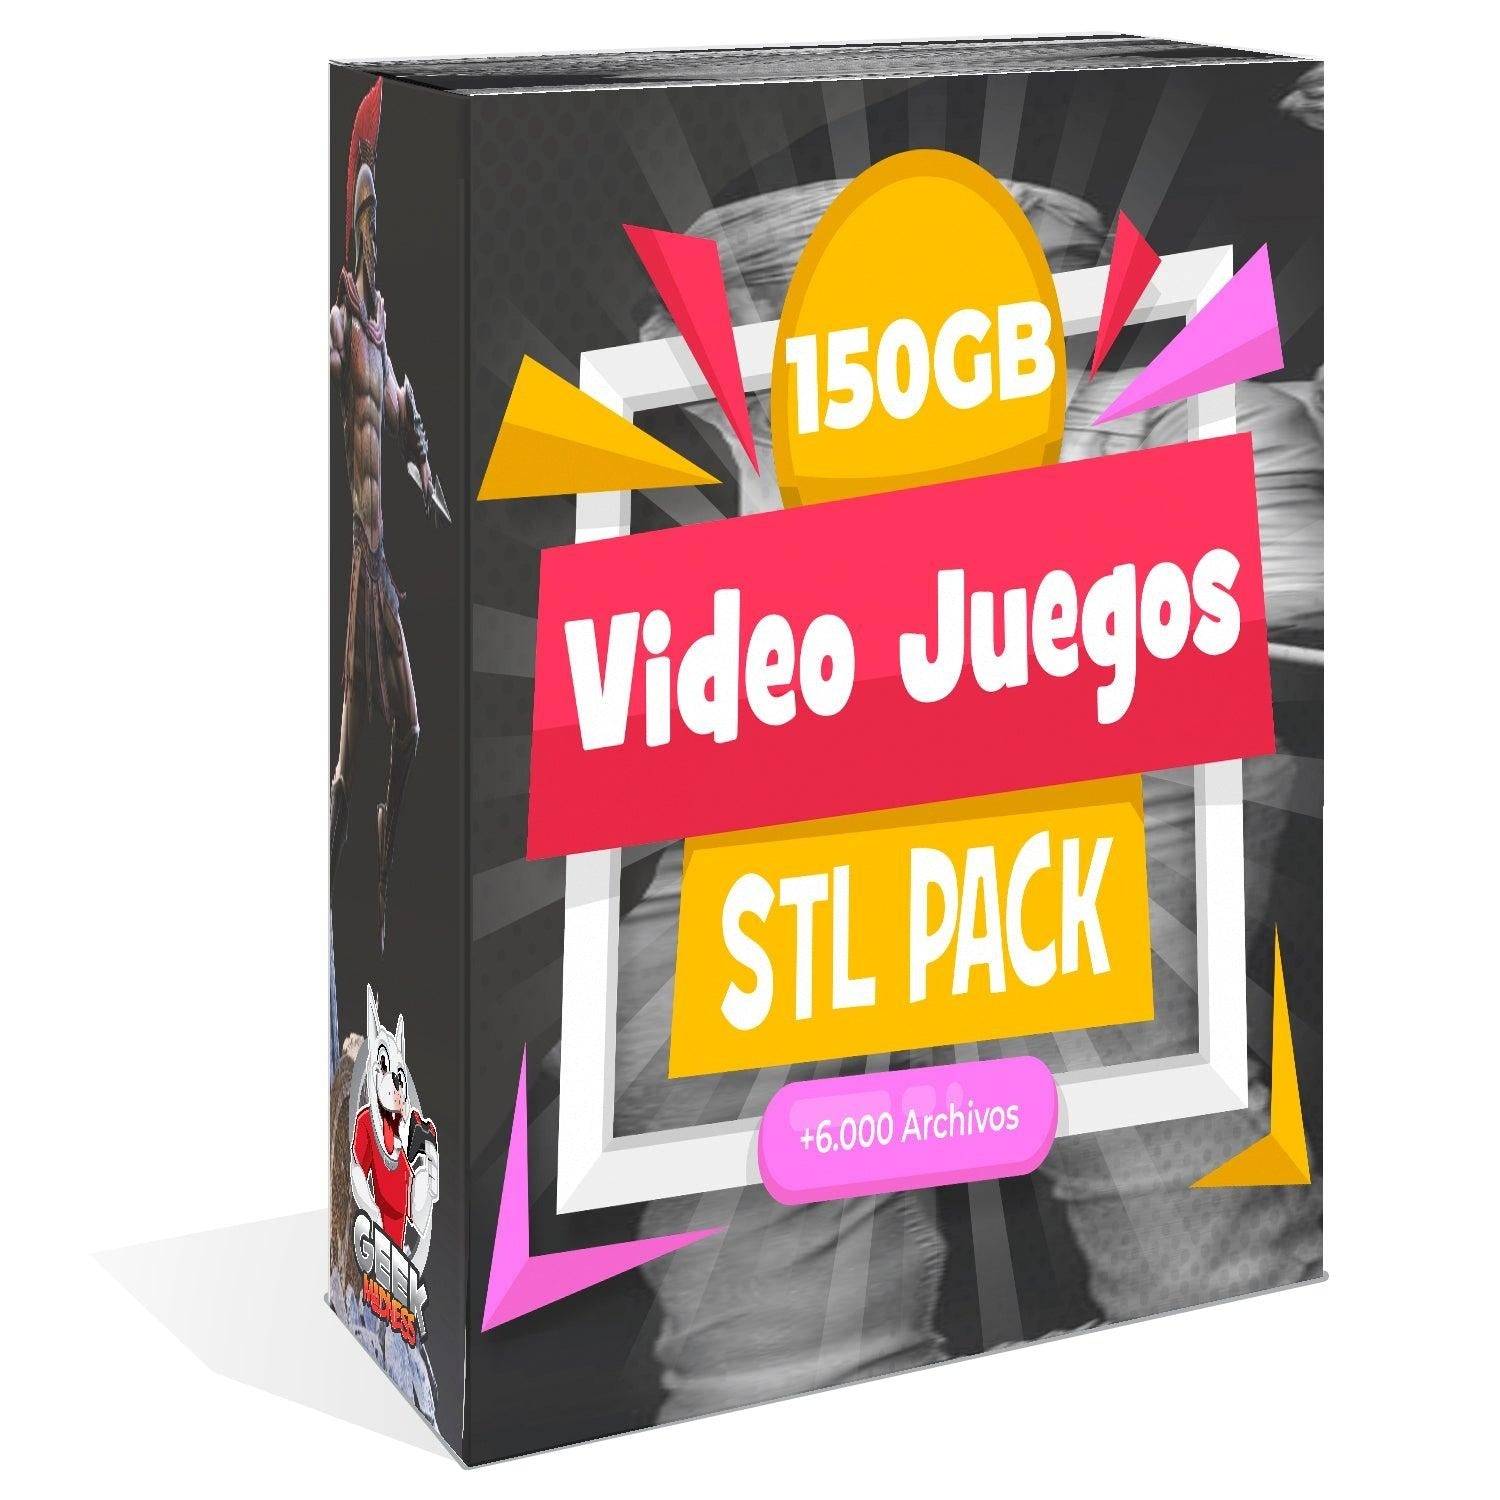 Pack STL Video Juegos + De 150gb - 6.000 Archivos Impresiones 3D - GeekMadness